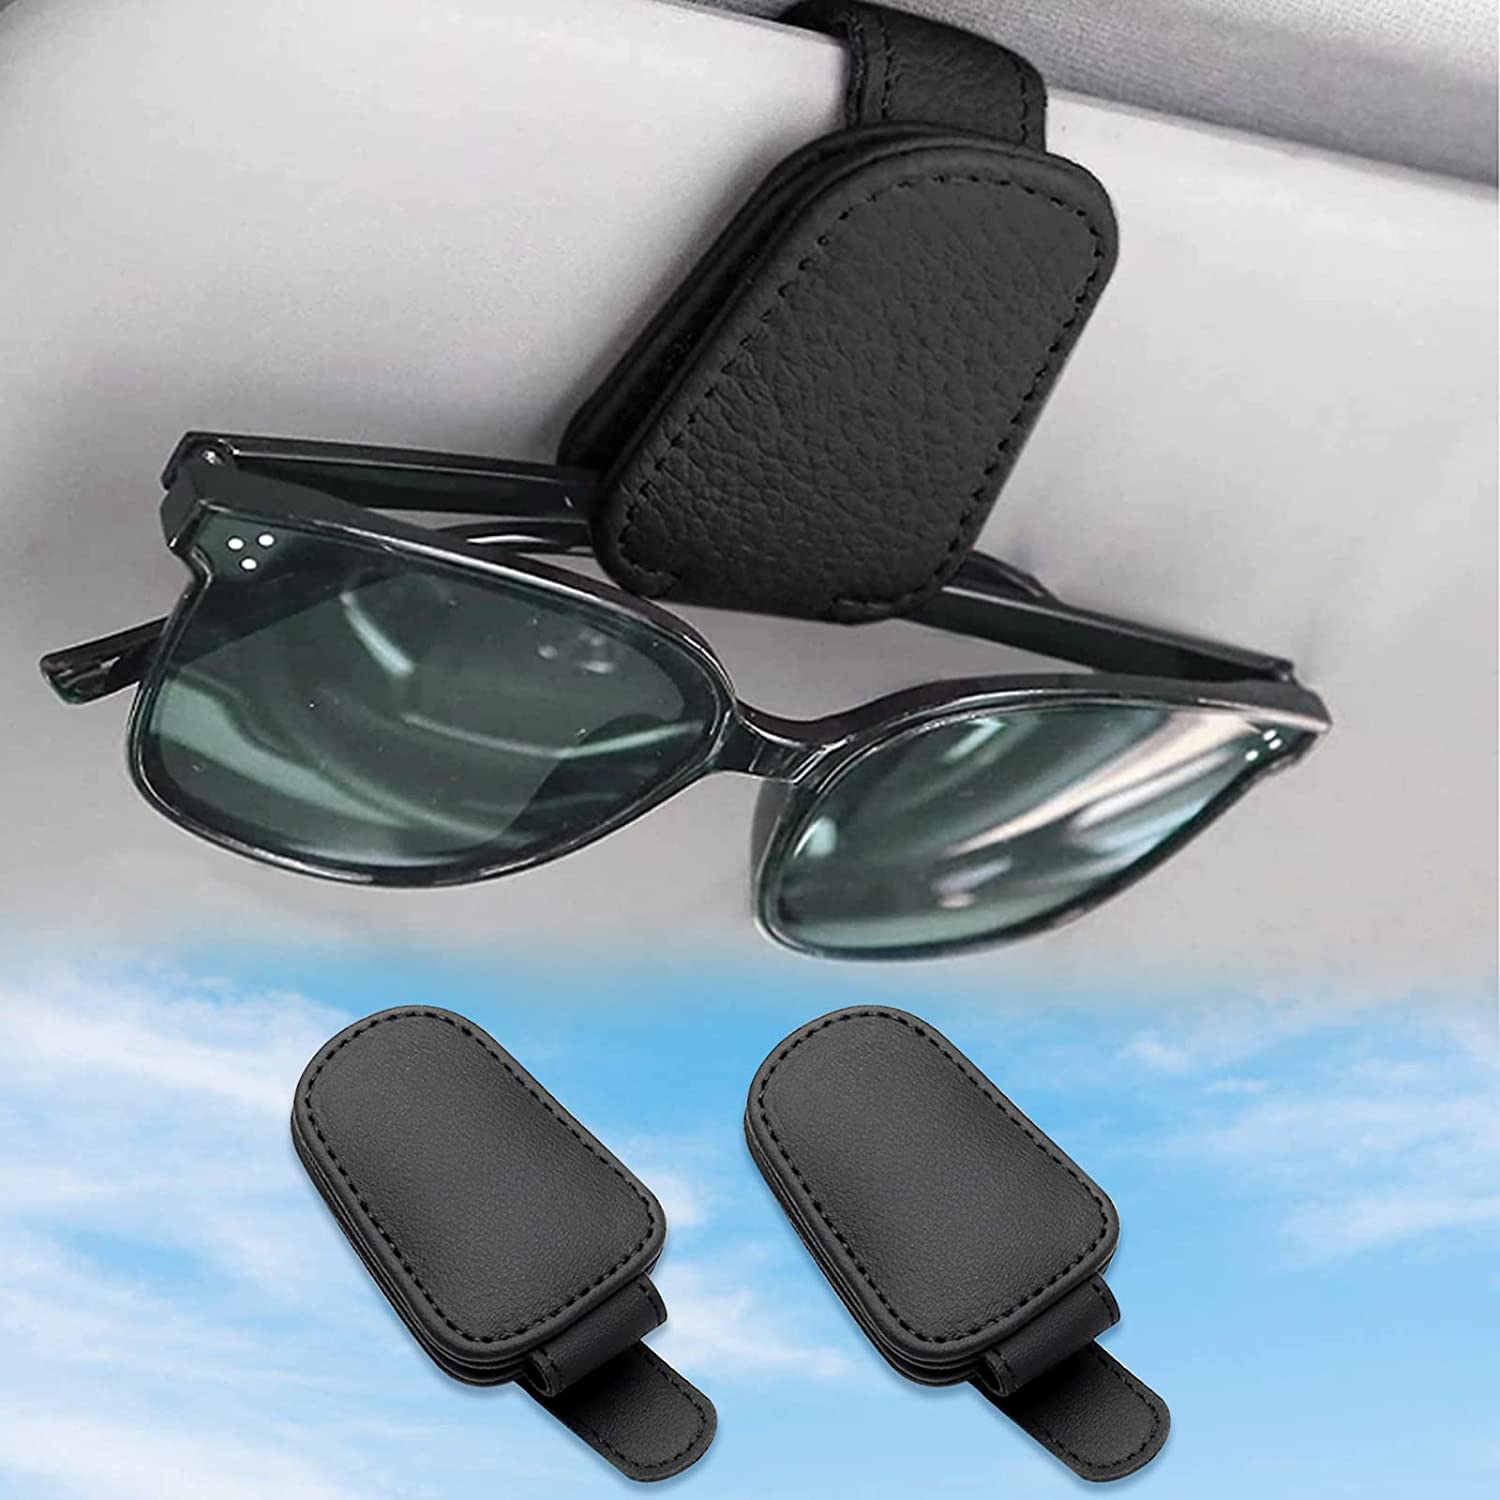 2 Pack Brillenhalter für Auto Sonnenblende,Auto Brillenhalter,Brillenhalter für Auto Sonnenblende,Auto Visier Zubehör,car sunglasses holder,Auto Visier Sonnenbrillenhalter,für Auto Sonnenblende von DAZZTIME